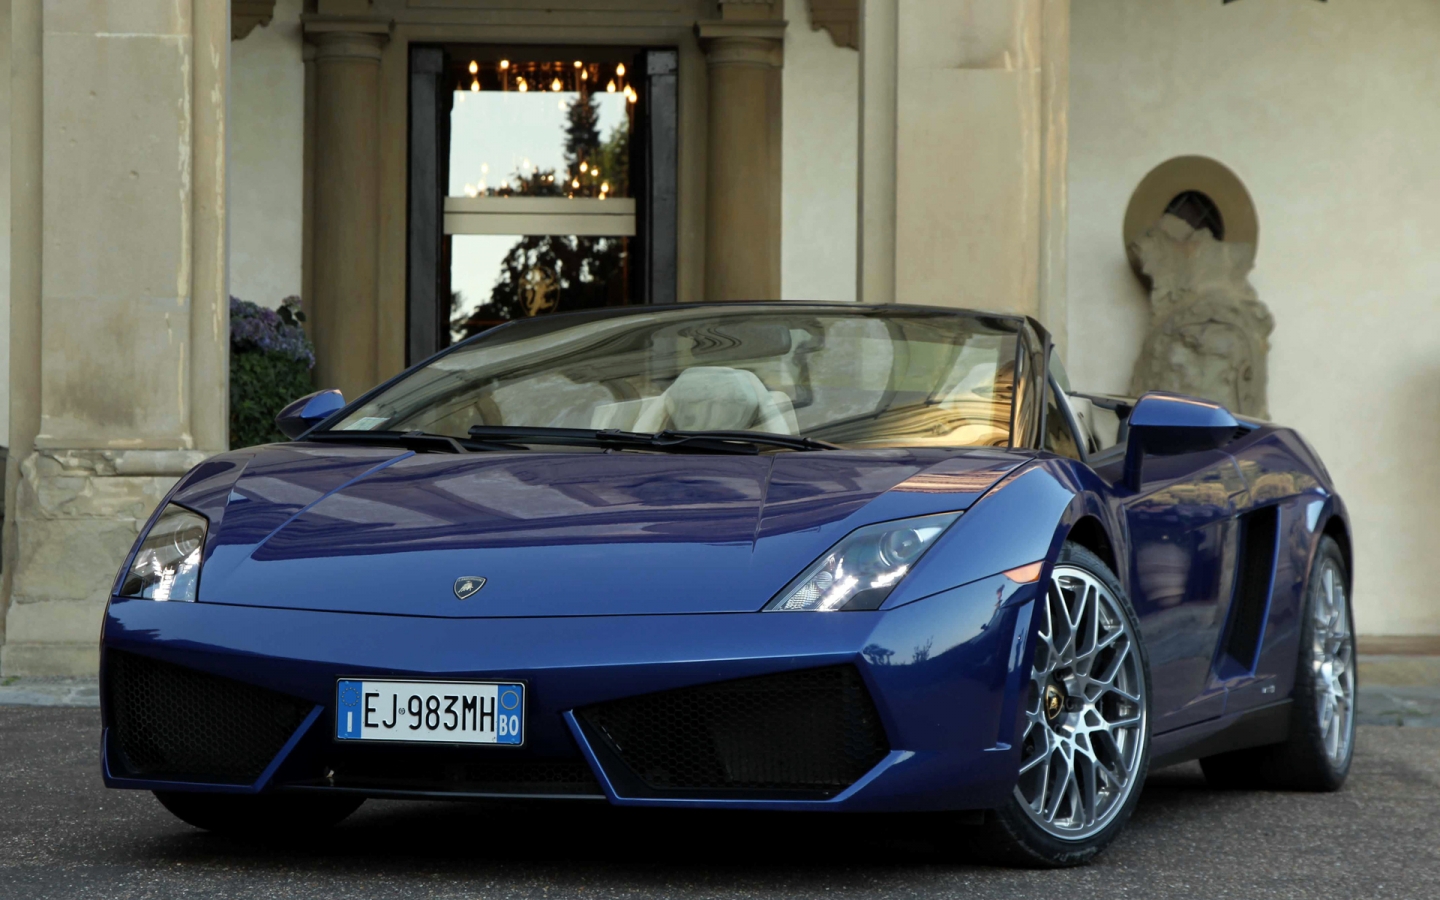 Lamborghini Gallardo LP550 2  for 1440 x 900 widescreen resolution